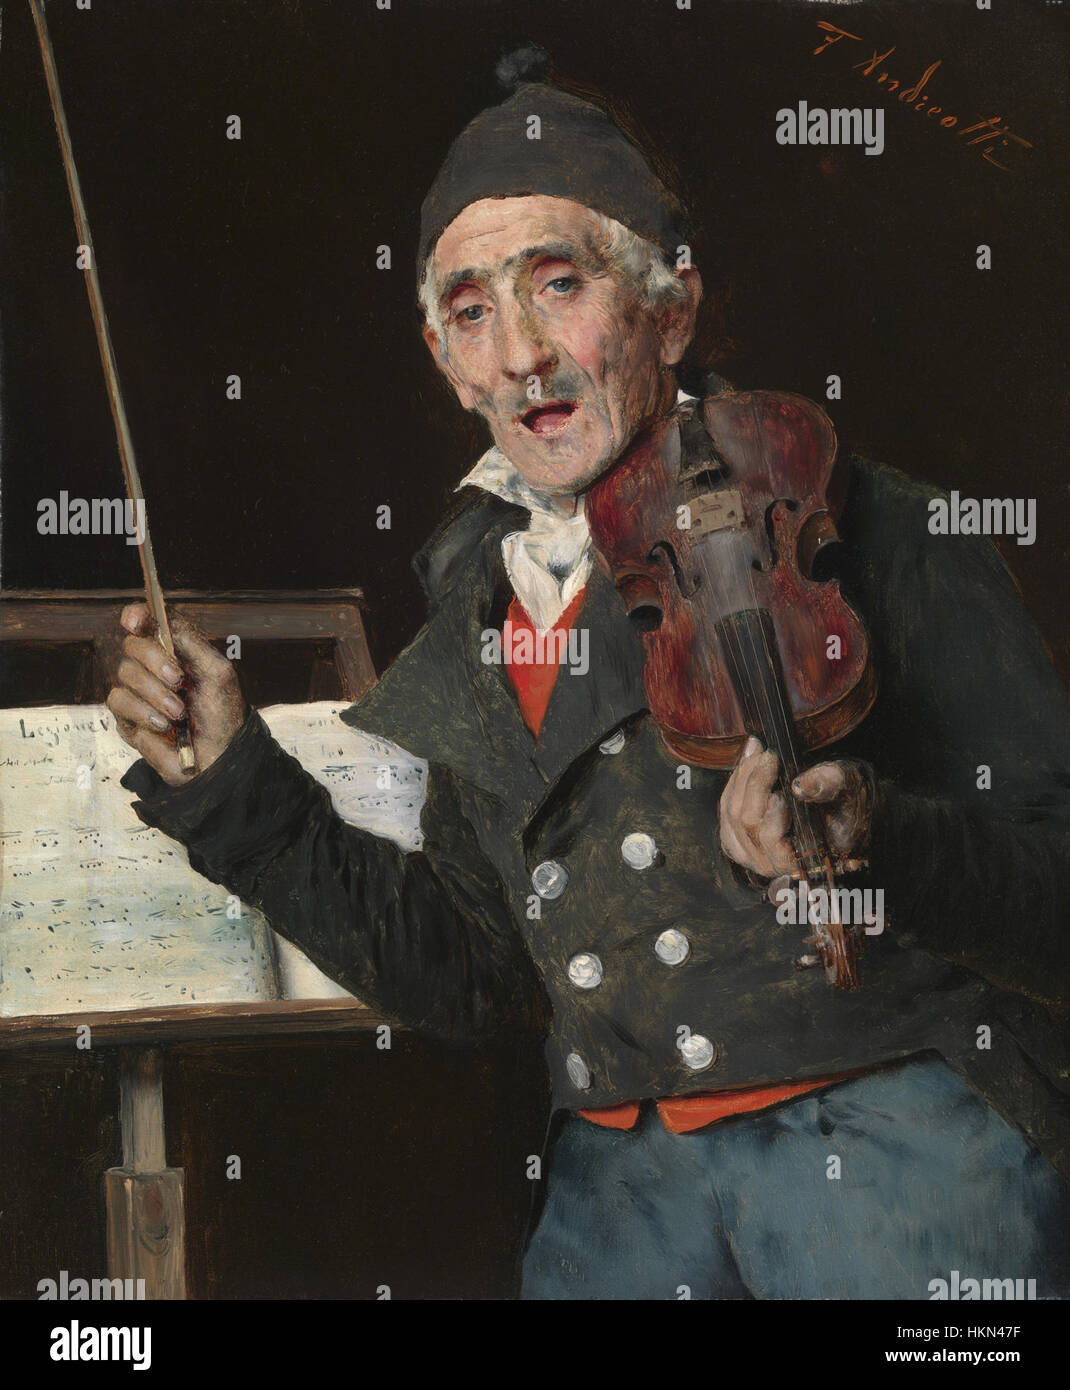 Andreotti, le professeur de violon Banque D'Images